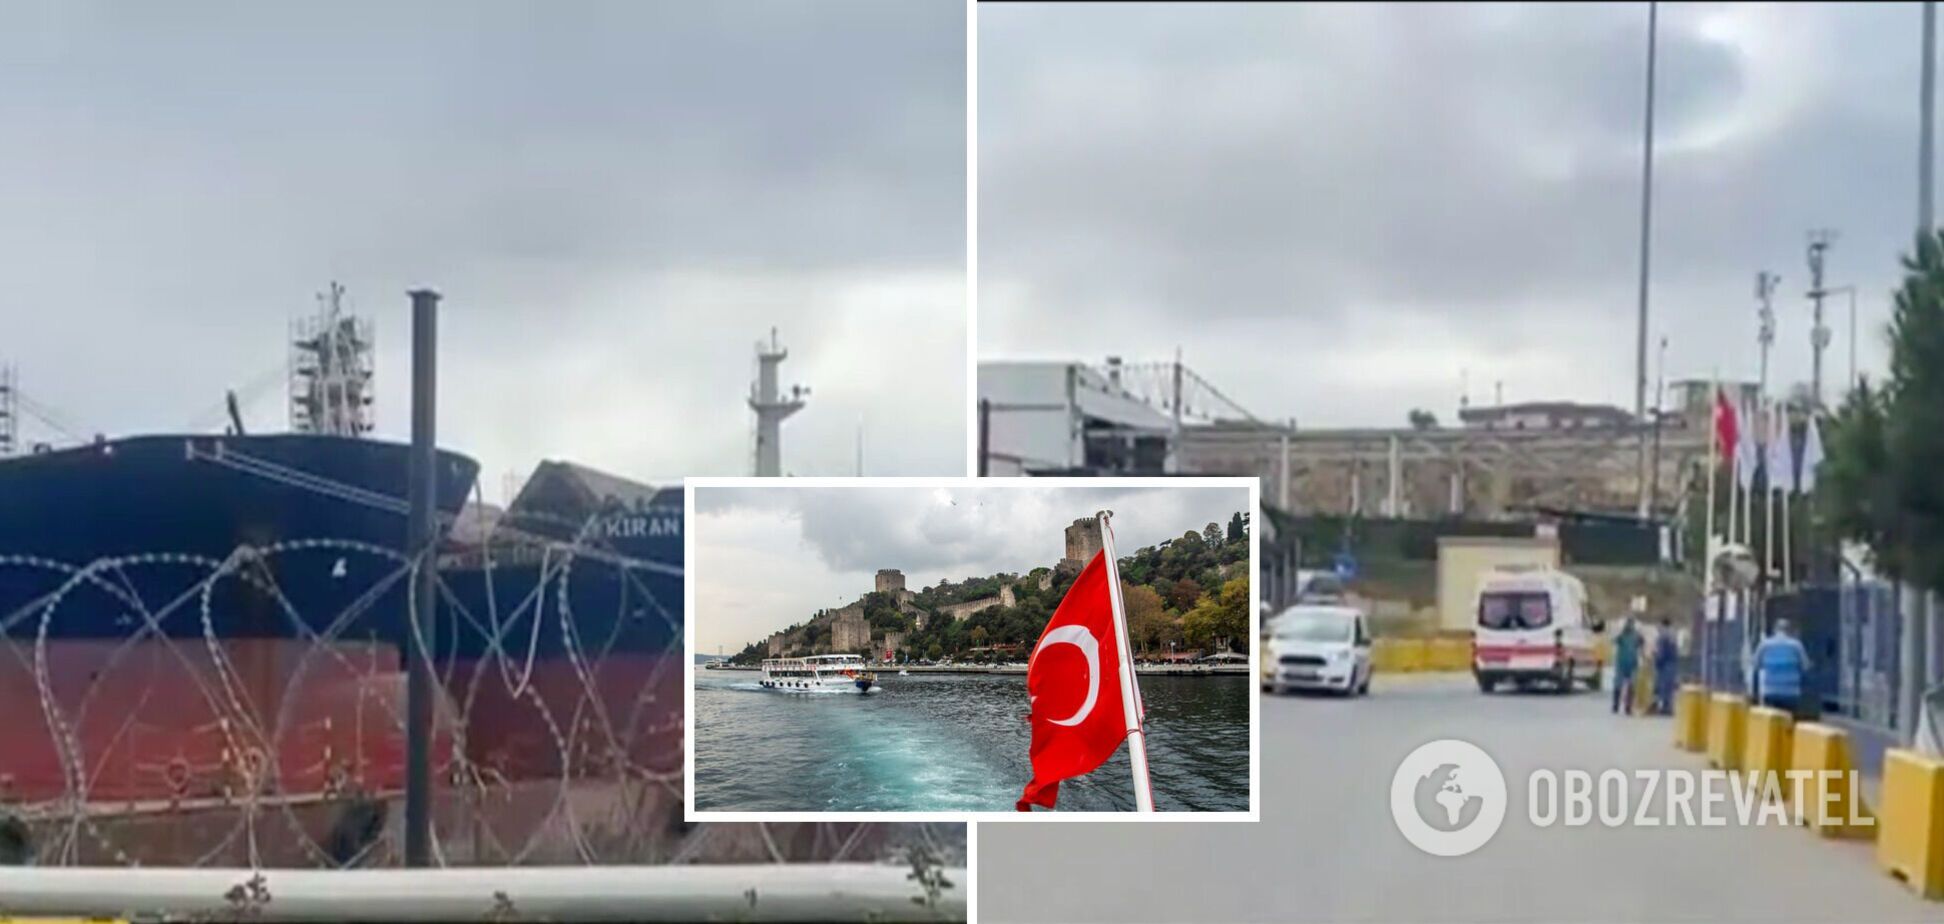 Вблизи Стамбула произошел взрыв на судостроительном заводе: есть раненый и погибший